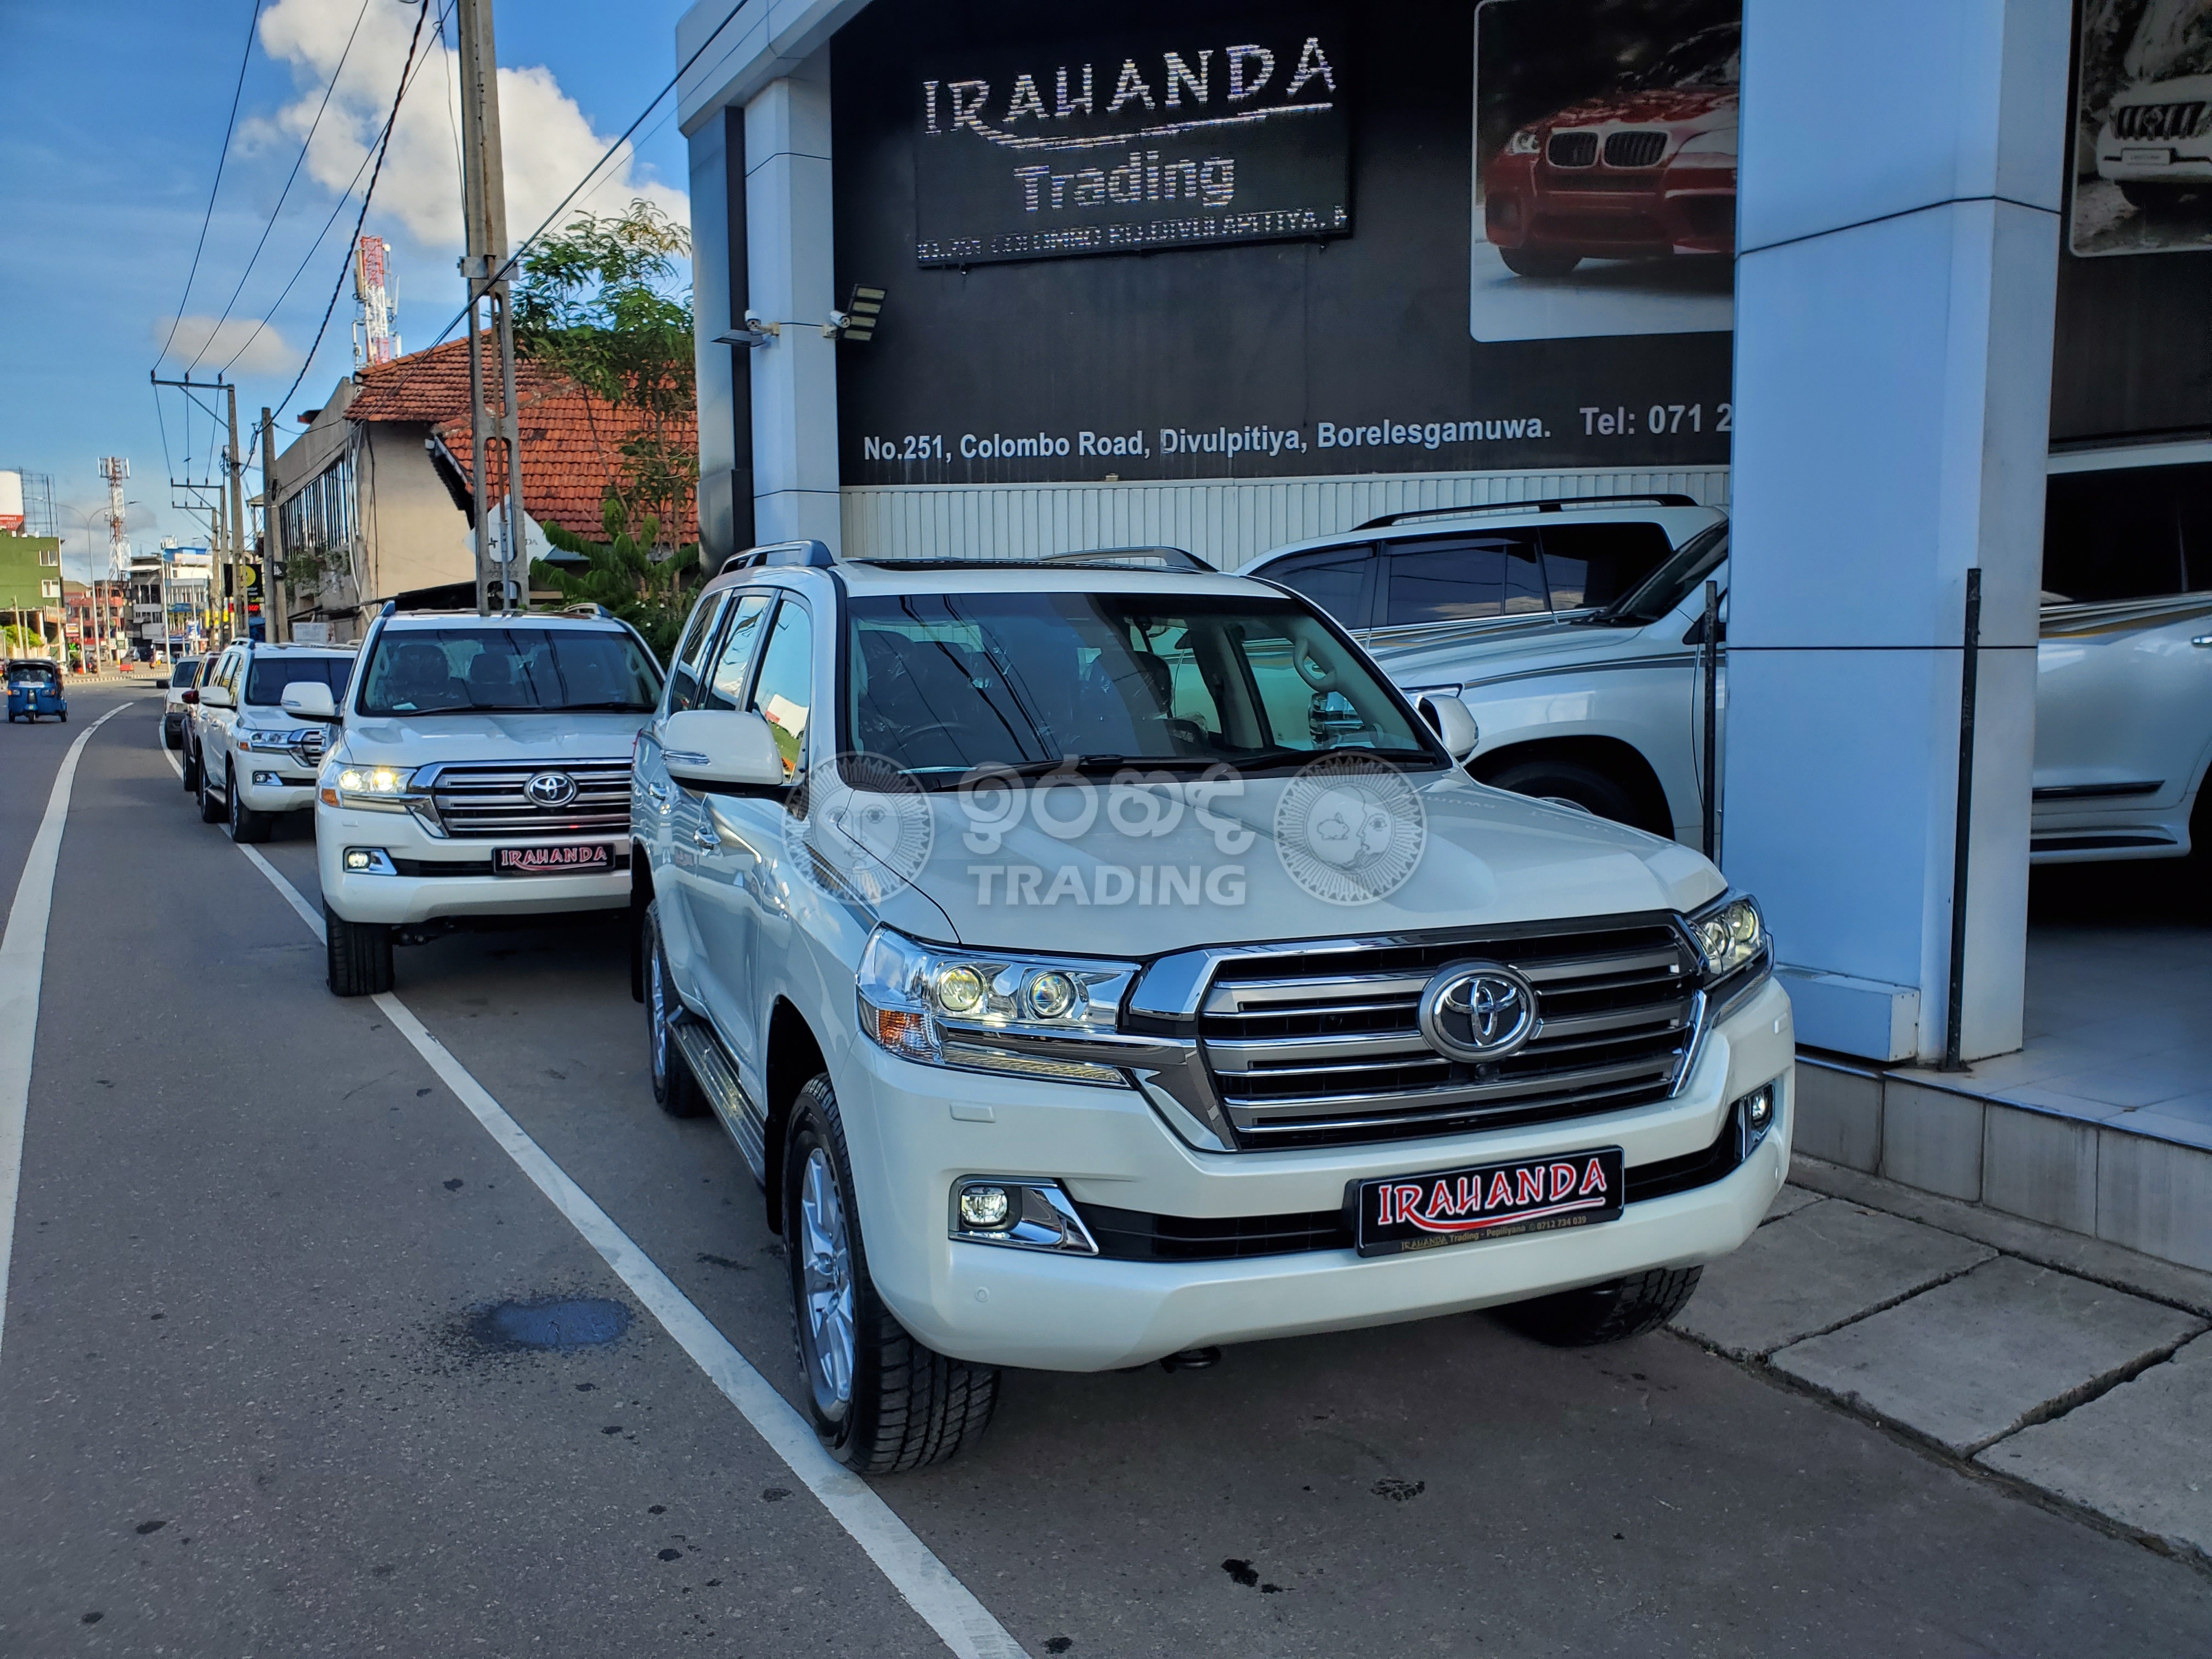 Land Cruiser Vx Brand New Diesel Irahanda Trading Best Luxury Car Dealer Of Sri Lanka